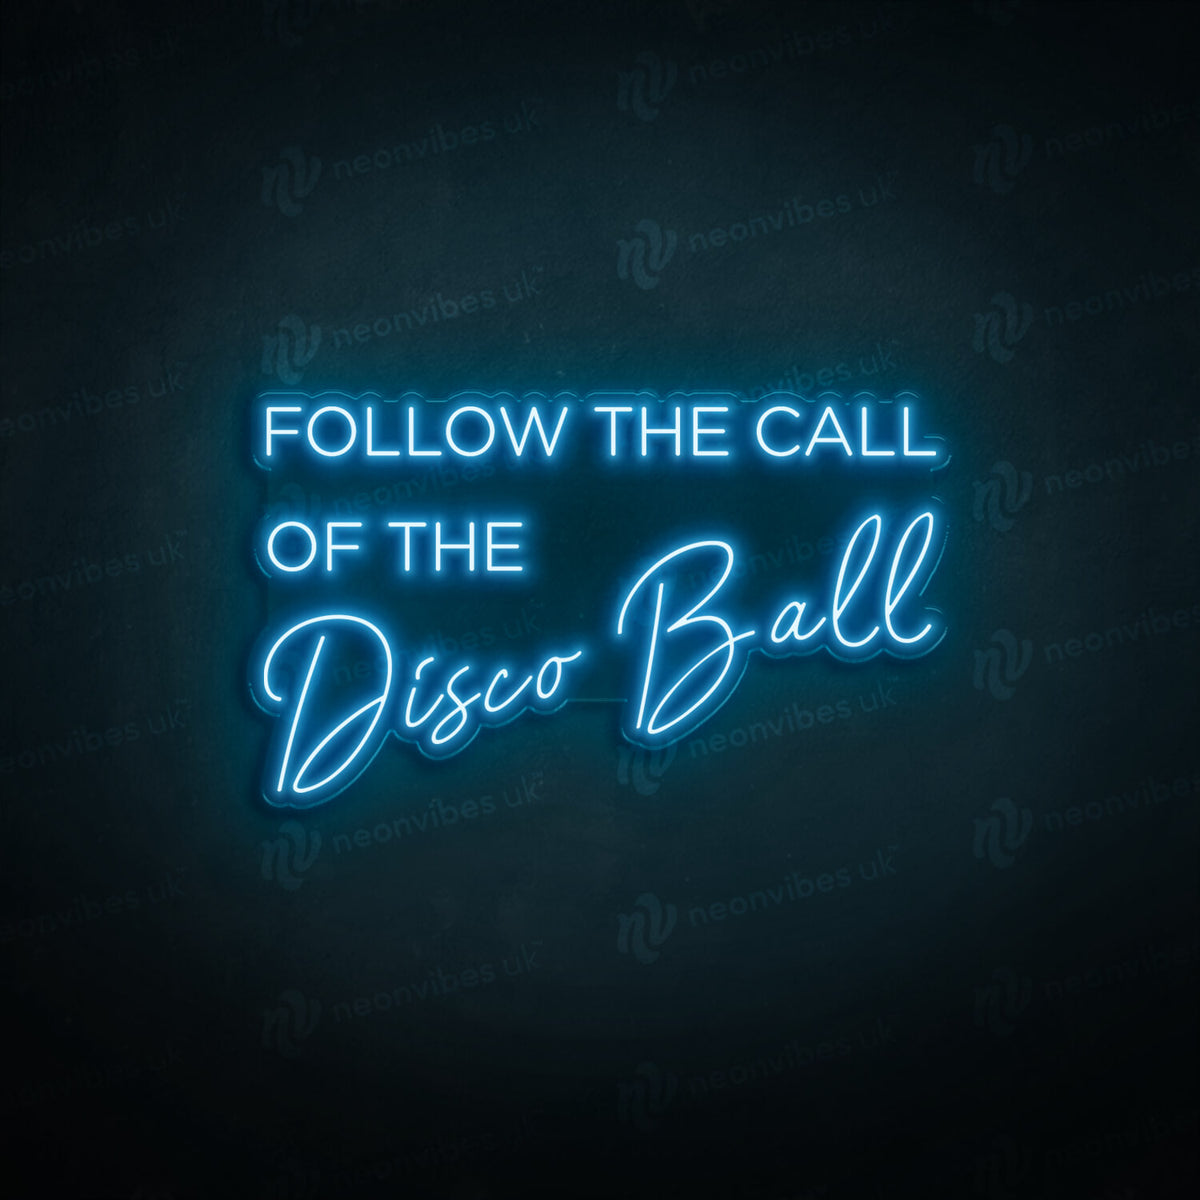 Follow the call of the disco ball neon sign